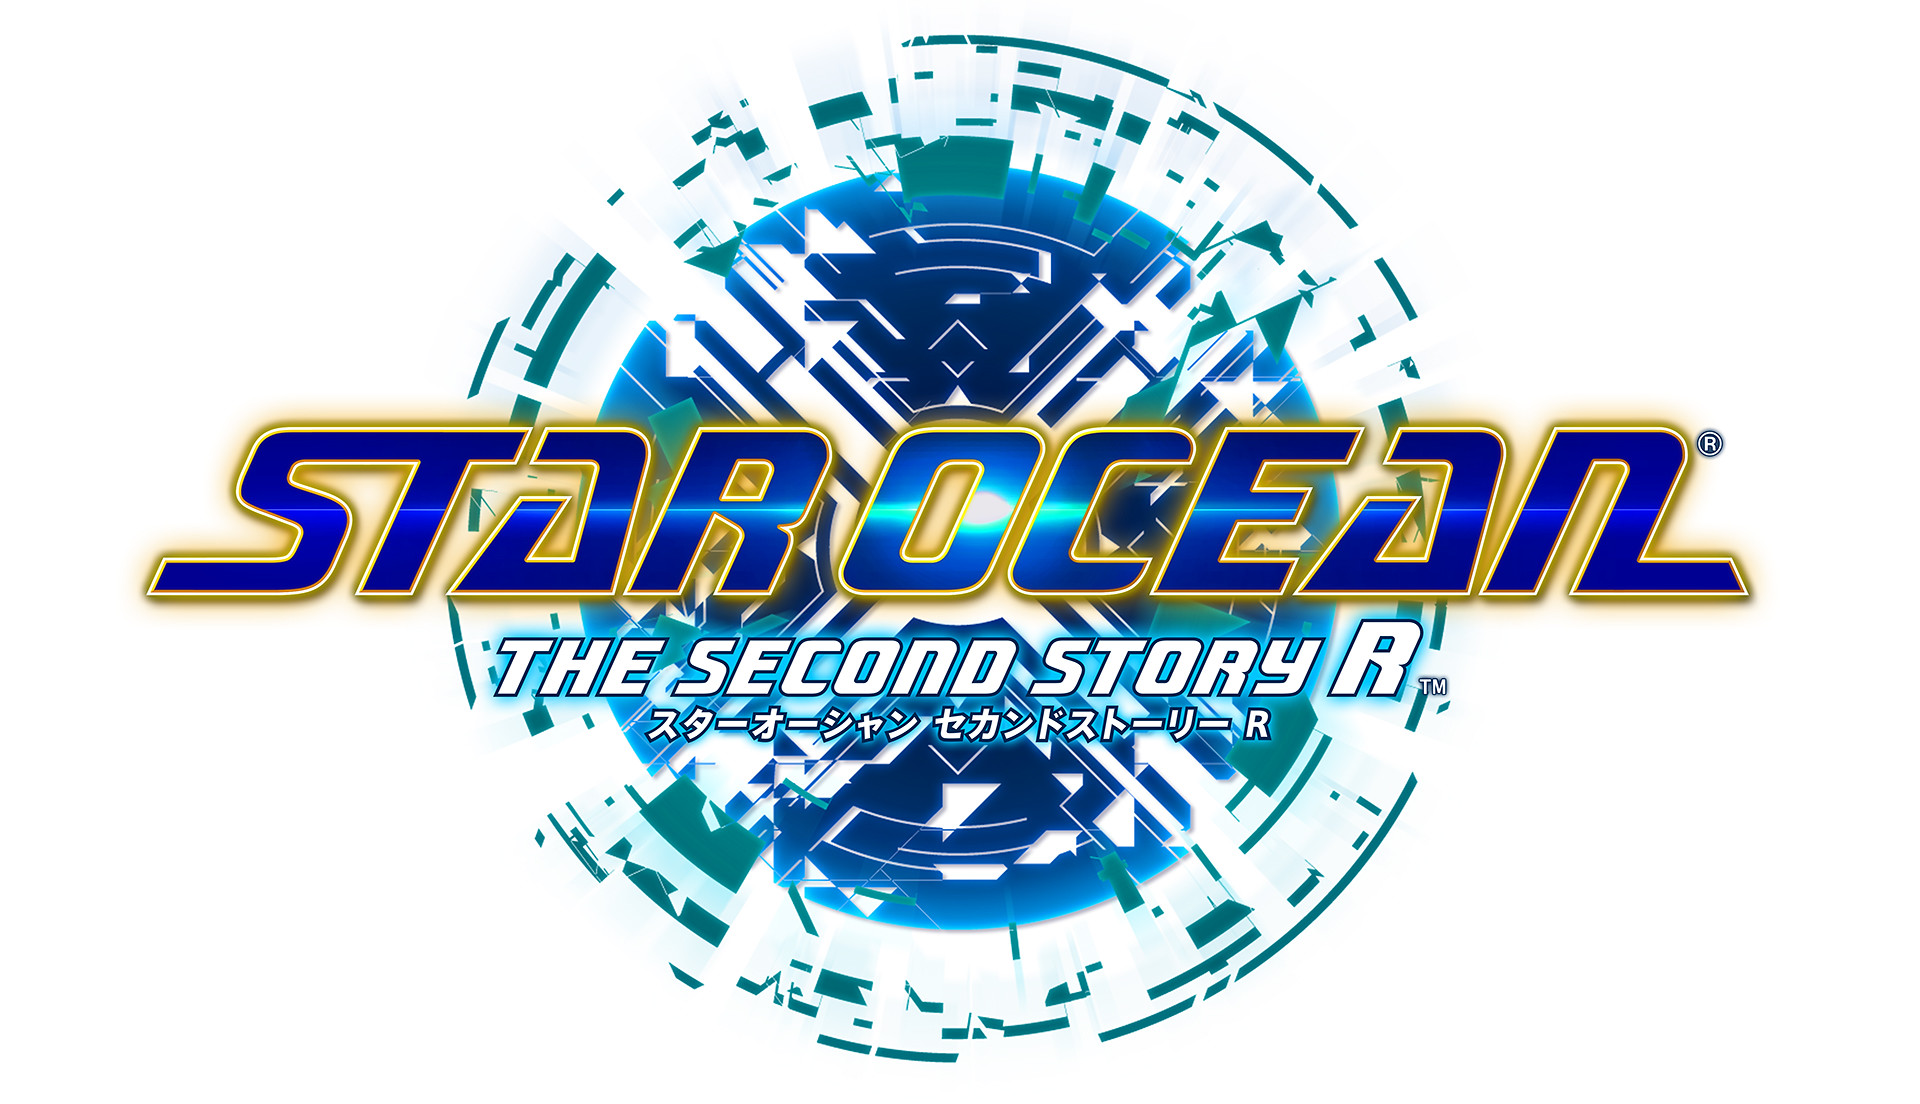 53200926504 4c3aba47b5 k - Star Ocean The Second Story R angespielt: Die Wiedergeburt eines klassischen RPGs